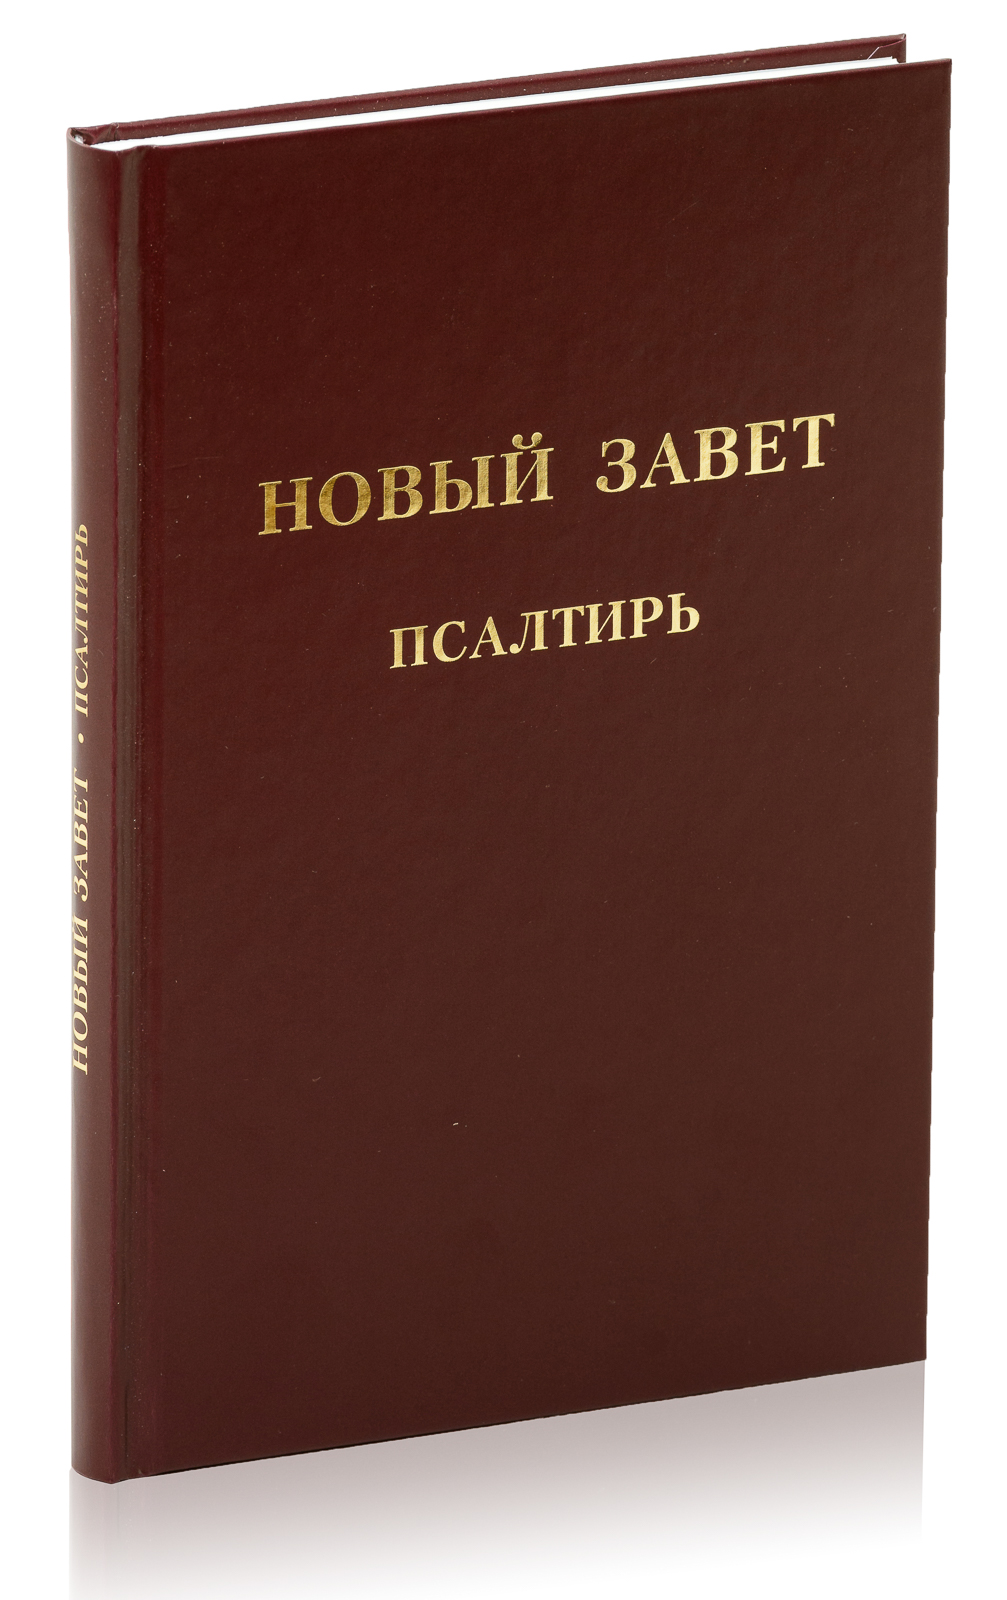 Das neue Testament mit Psalmen, Hardcover - russisch